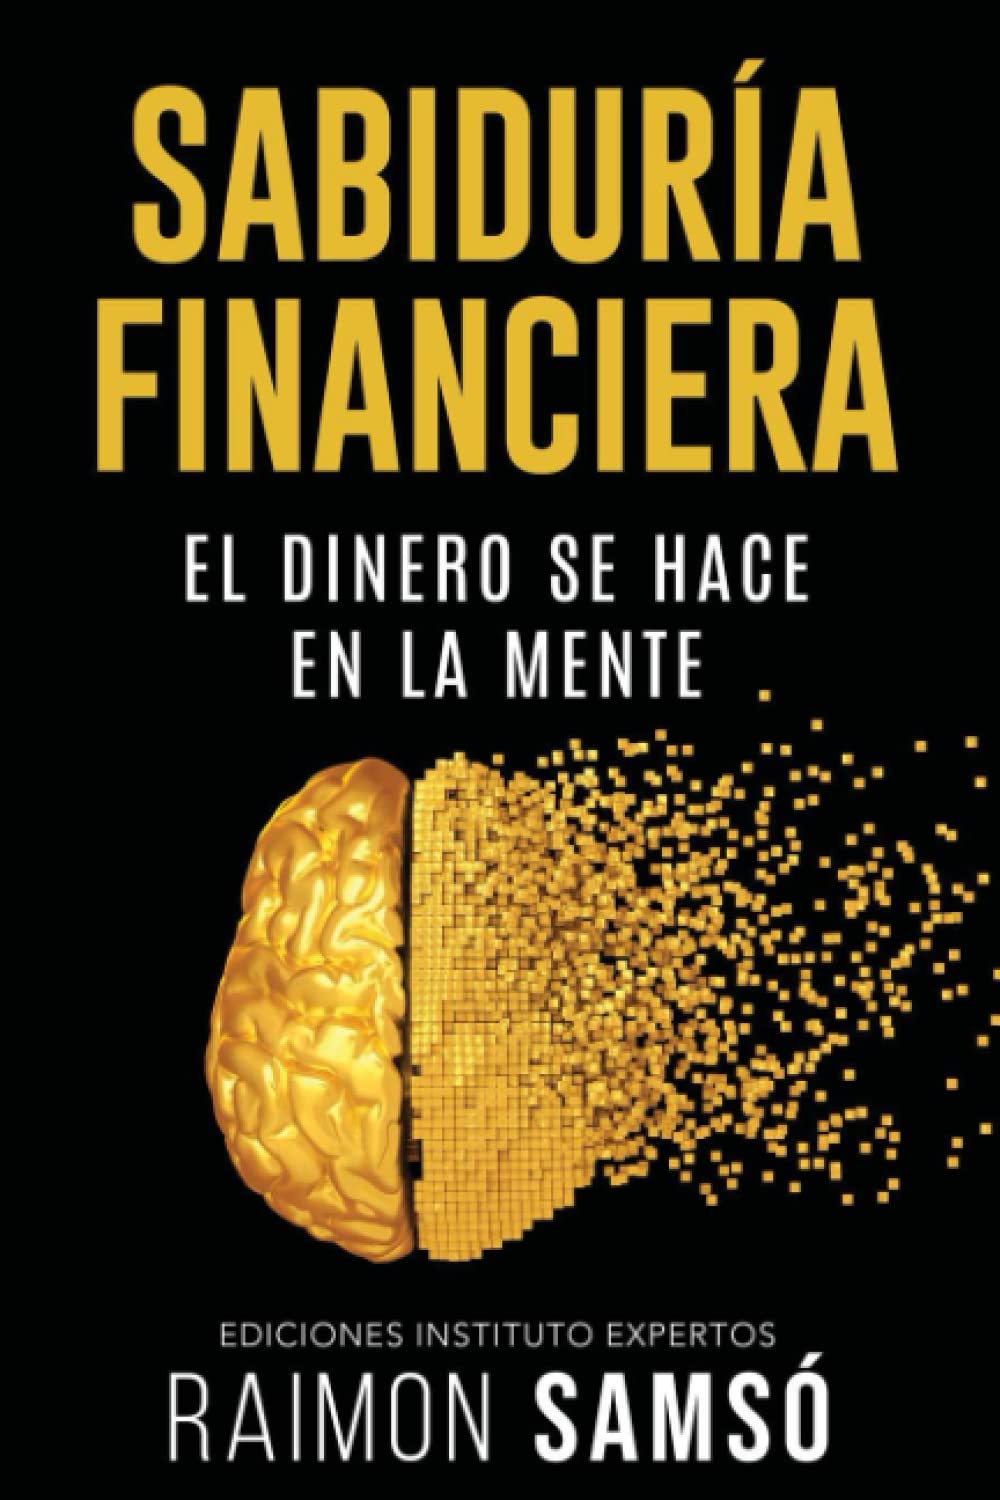 Sabiduría Financiera: El Dinero se hace en la Mente (Spanish Edition)